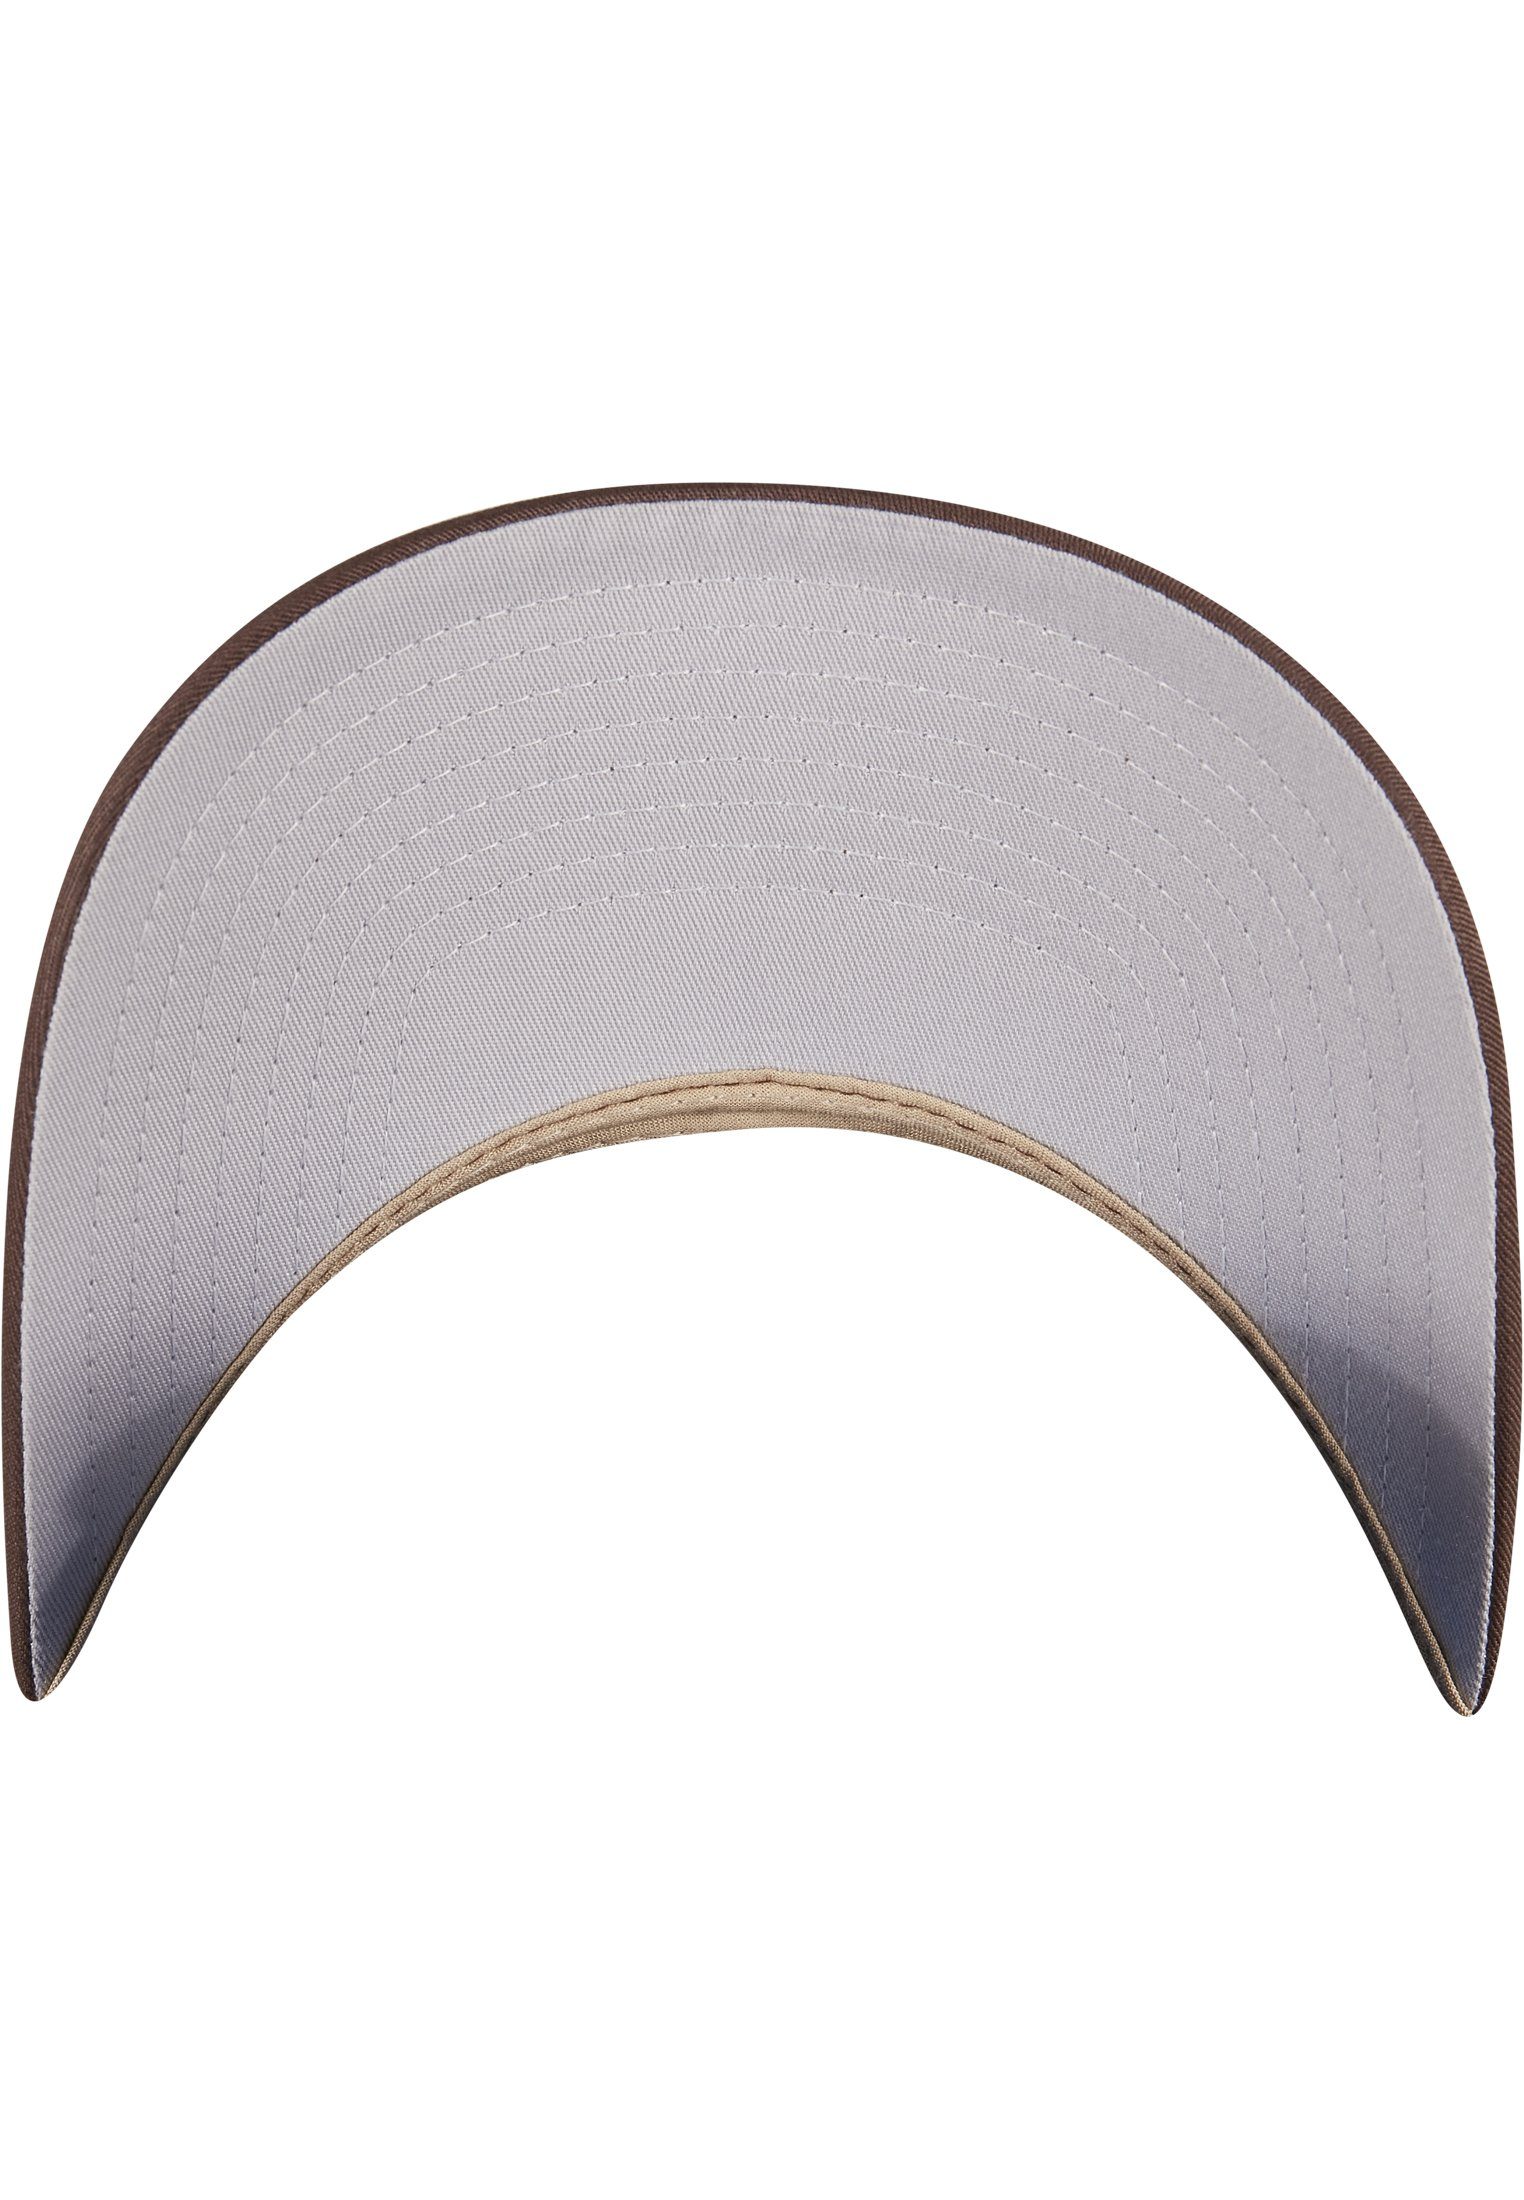 Flexfit Flex 2-Tone Cap Accessoires Omnimesh brown/khaki 360° Cap